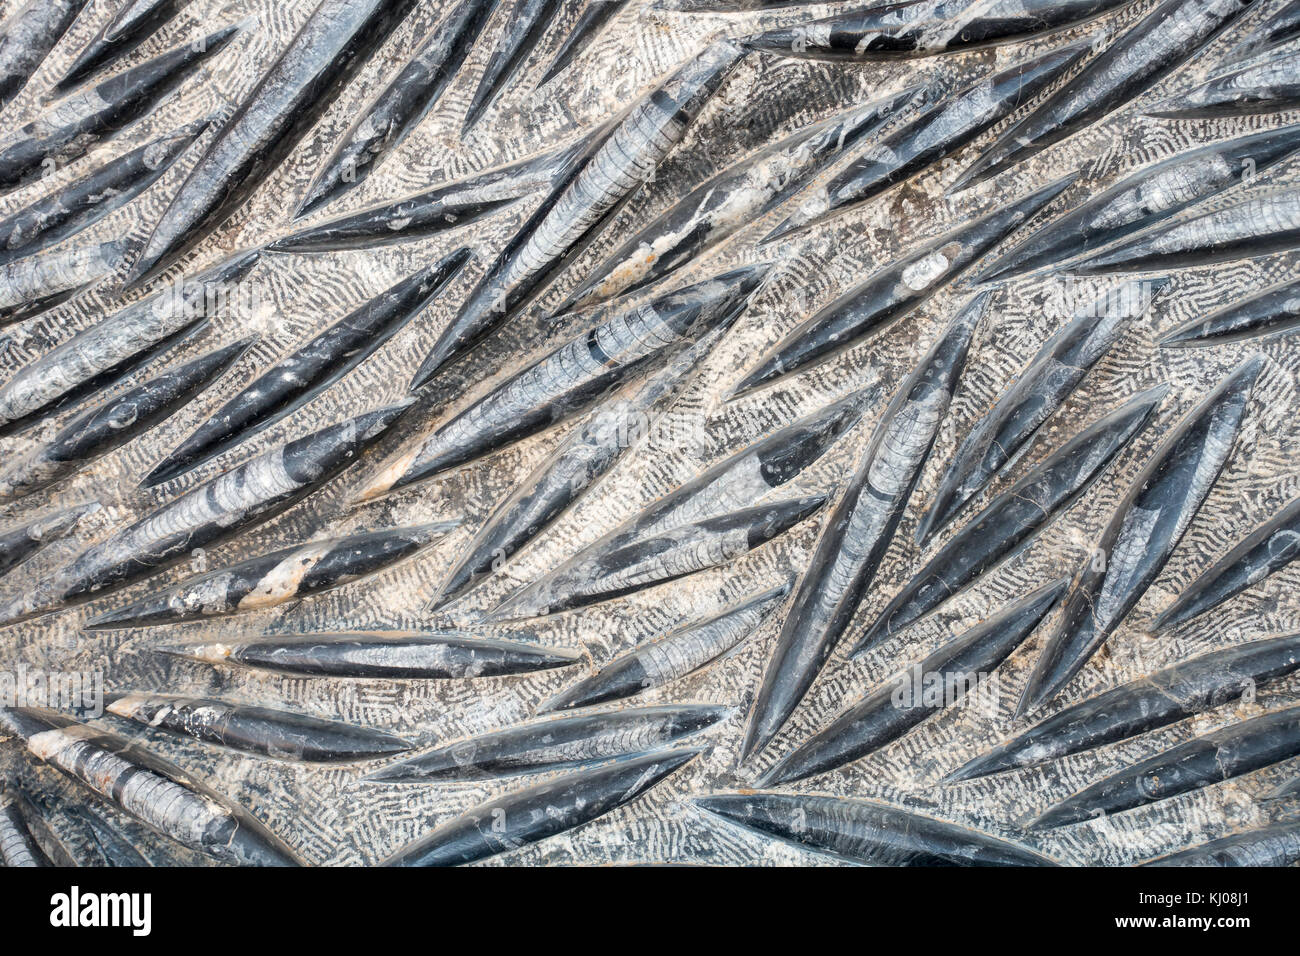 Libre d'un orthoceras combustibles dalle avec squid fossilisés trouvés au Maroc. Banque D'Images